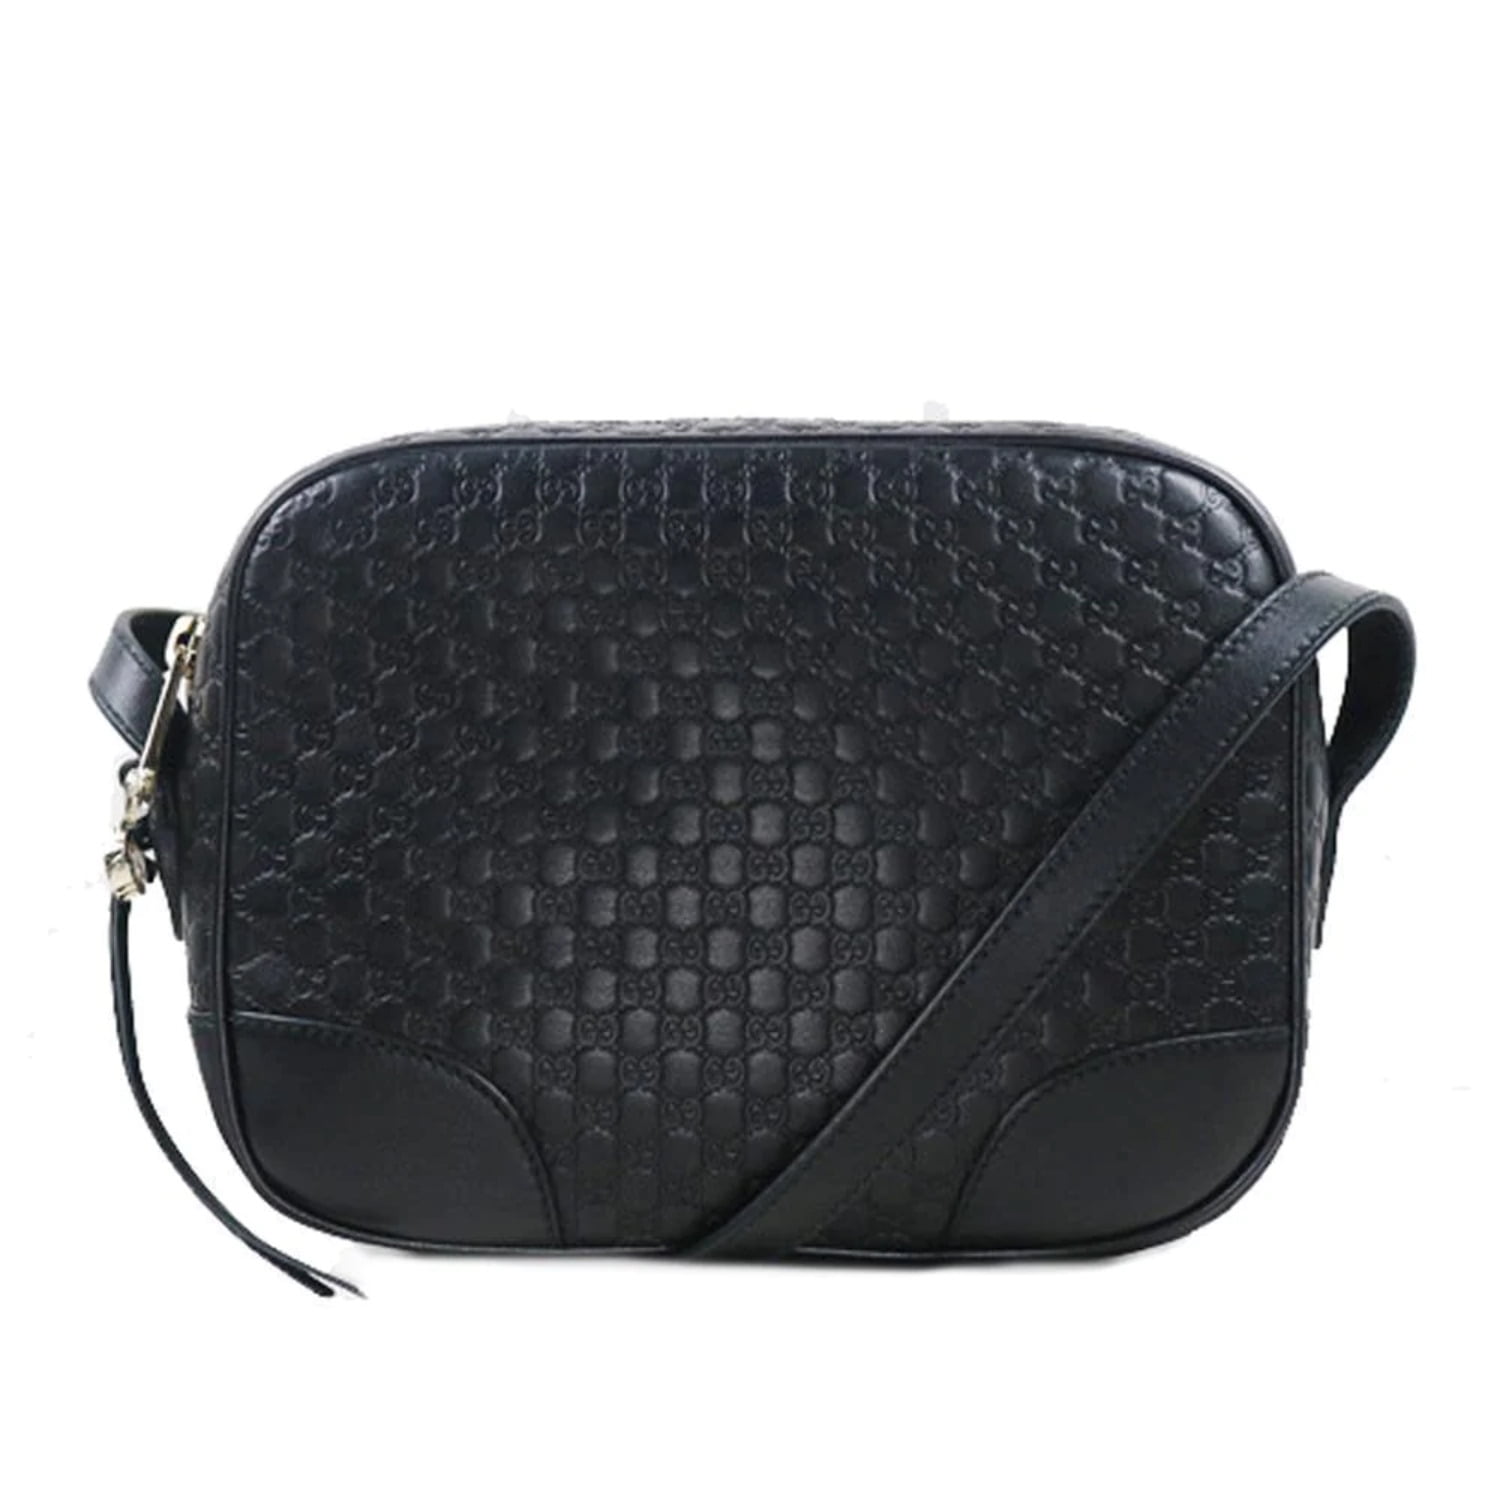 Gucci Bree Black Leather Microguccisima GG Cross Body Bag 449413